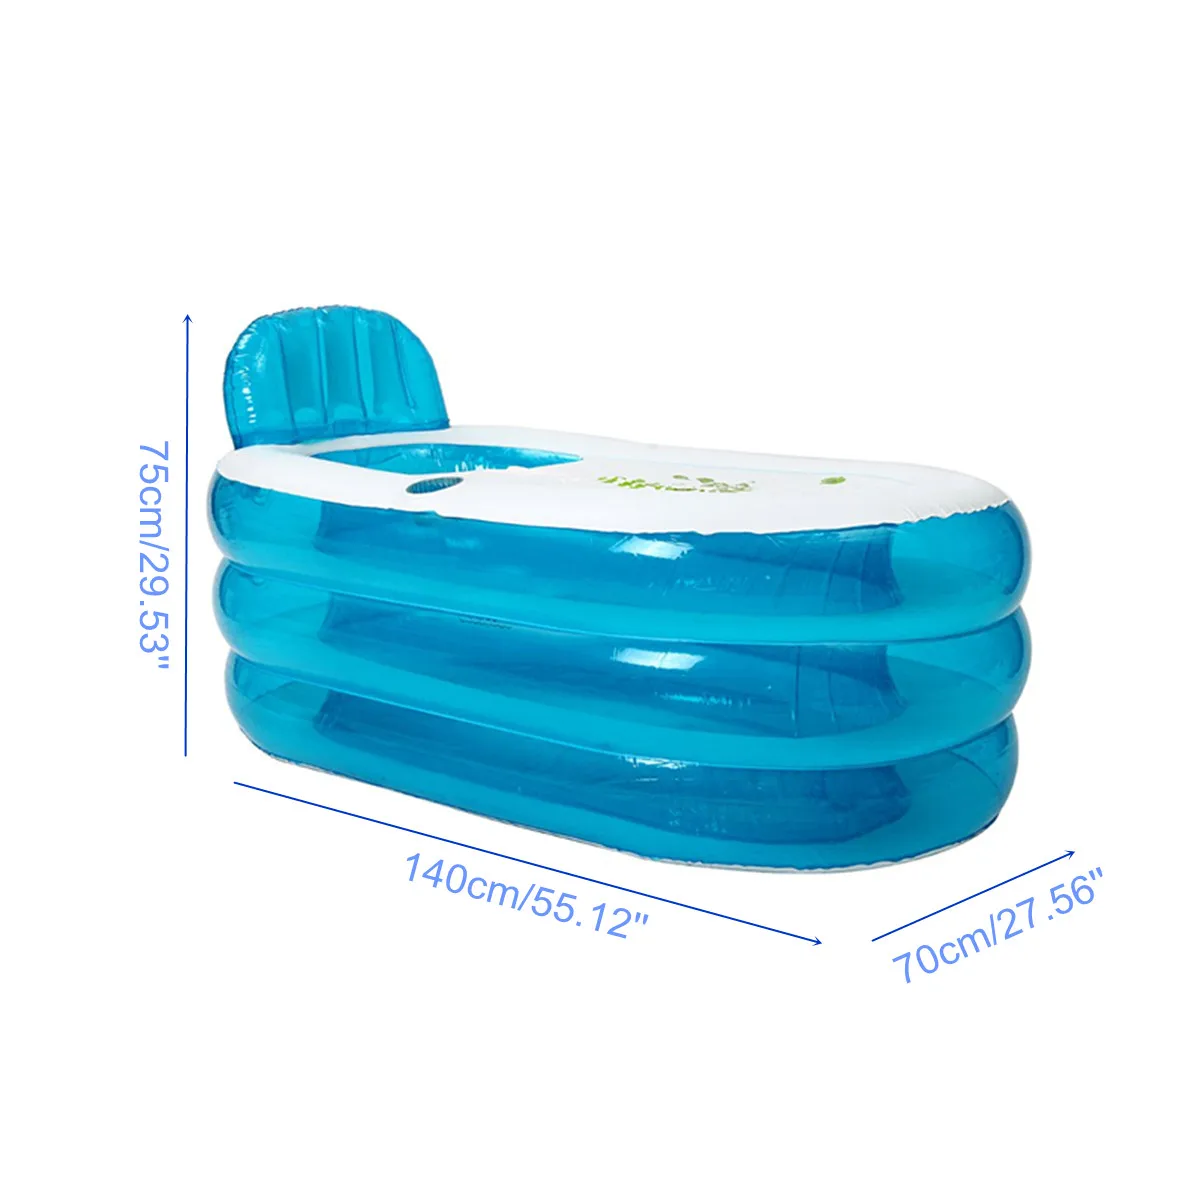 70 CM Inicio Camping Viaje Plegable Baño SPA con tubo de cojín para adultos-Azul Bañera de baño portátil Bañera inflable de PVC 140 75 